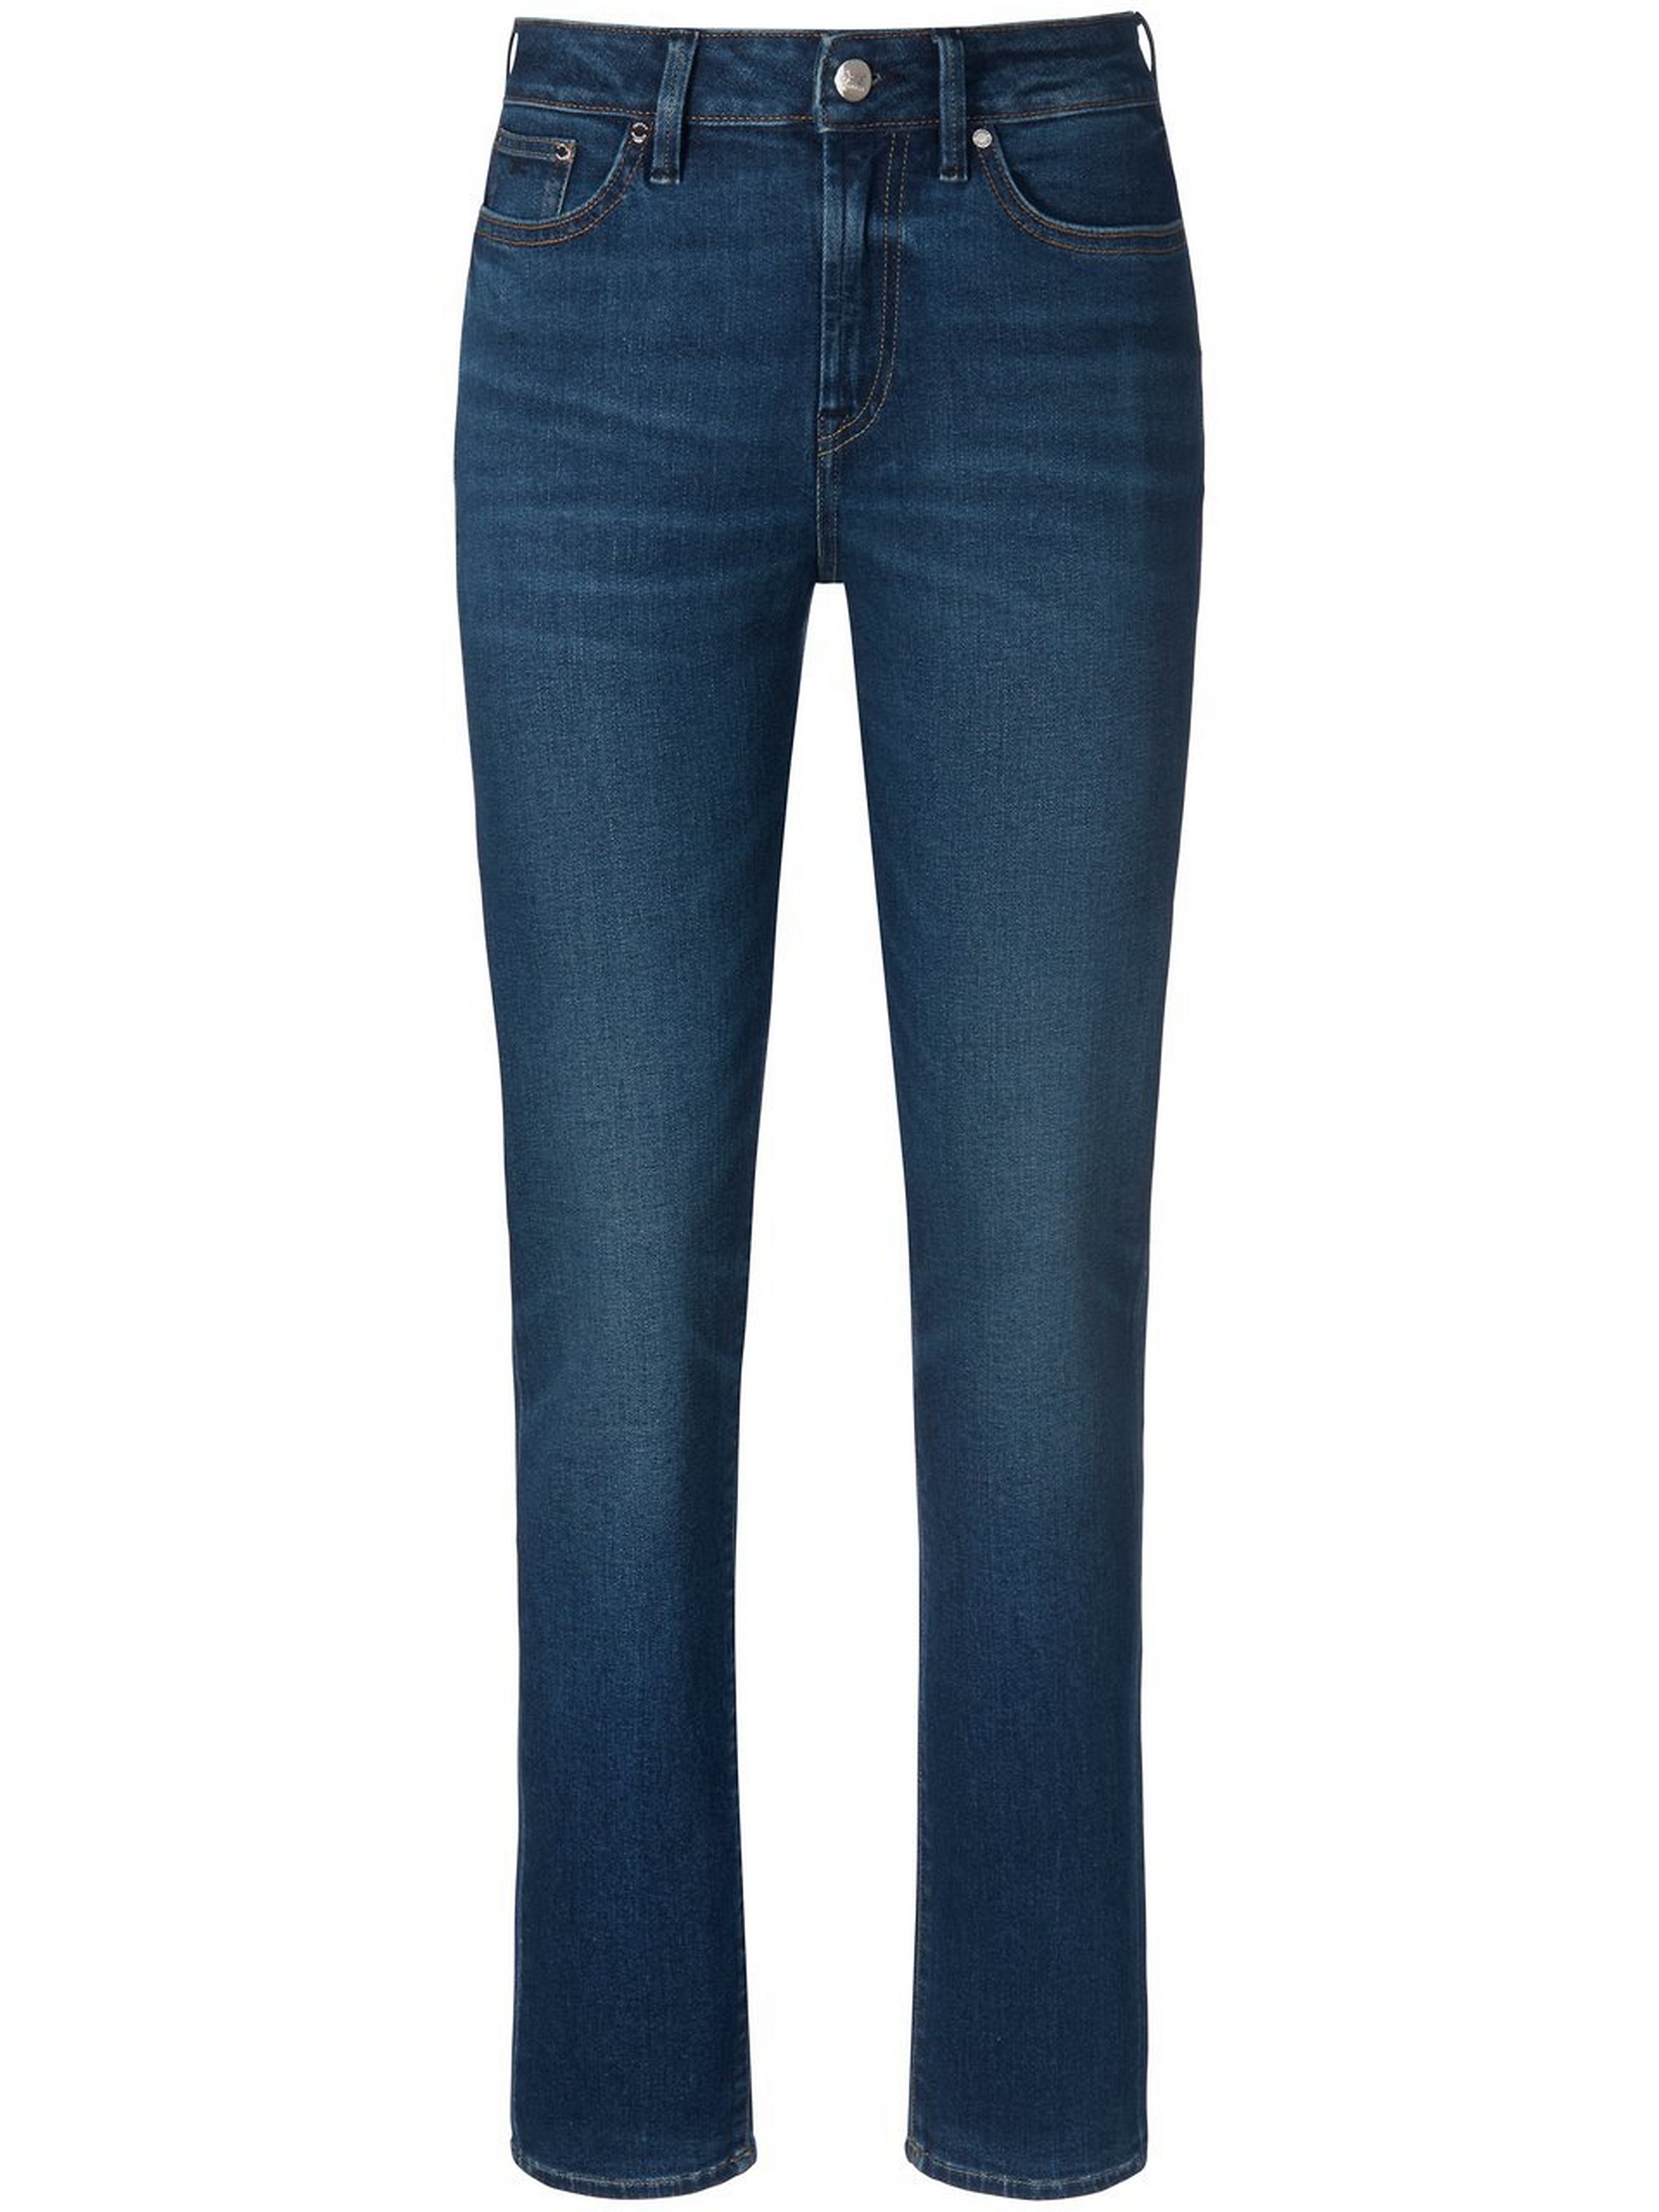 Jeans in inch lengte 30 Van Denham blauw